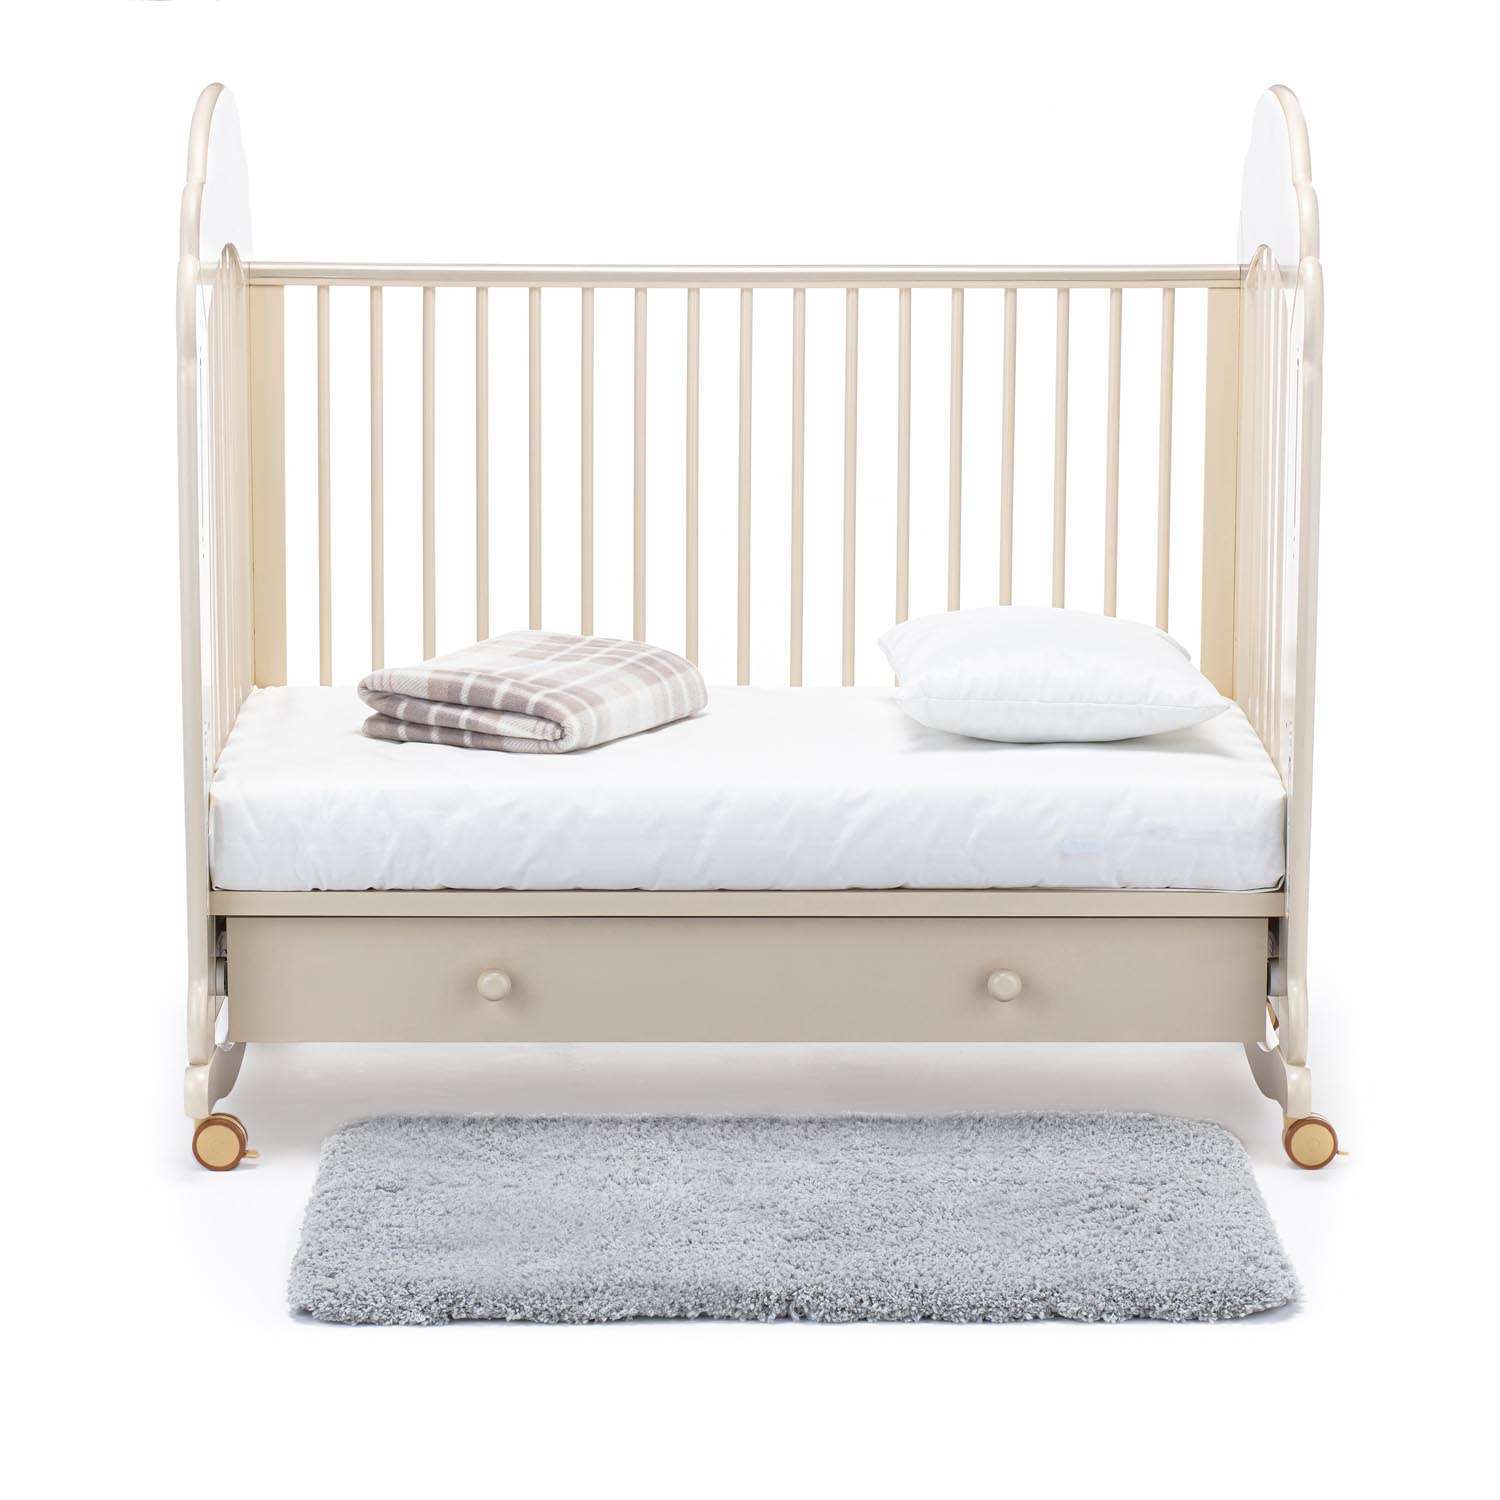 Детская кроватка Nuovita Parte Dondolo прямоугольная, без маятника (слоновая кость) - фото 21